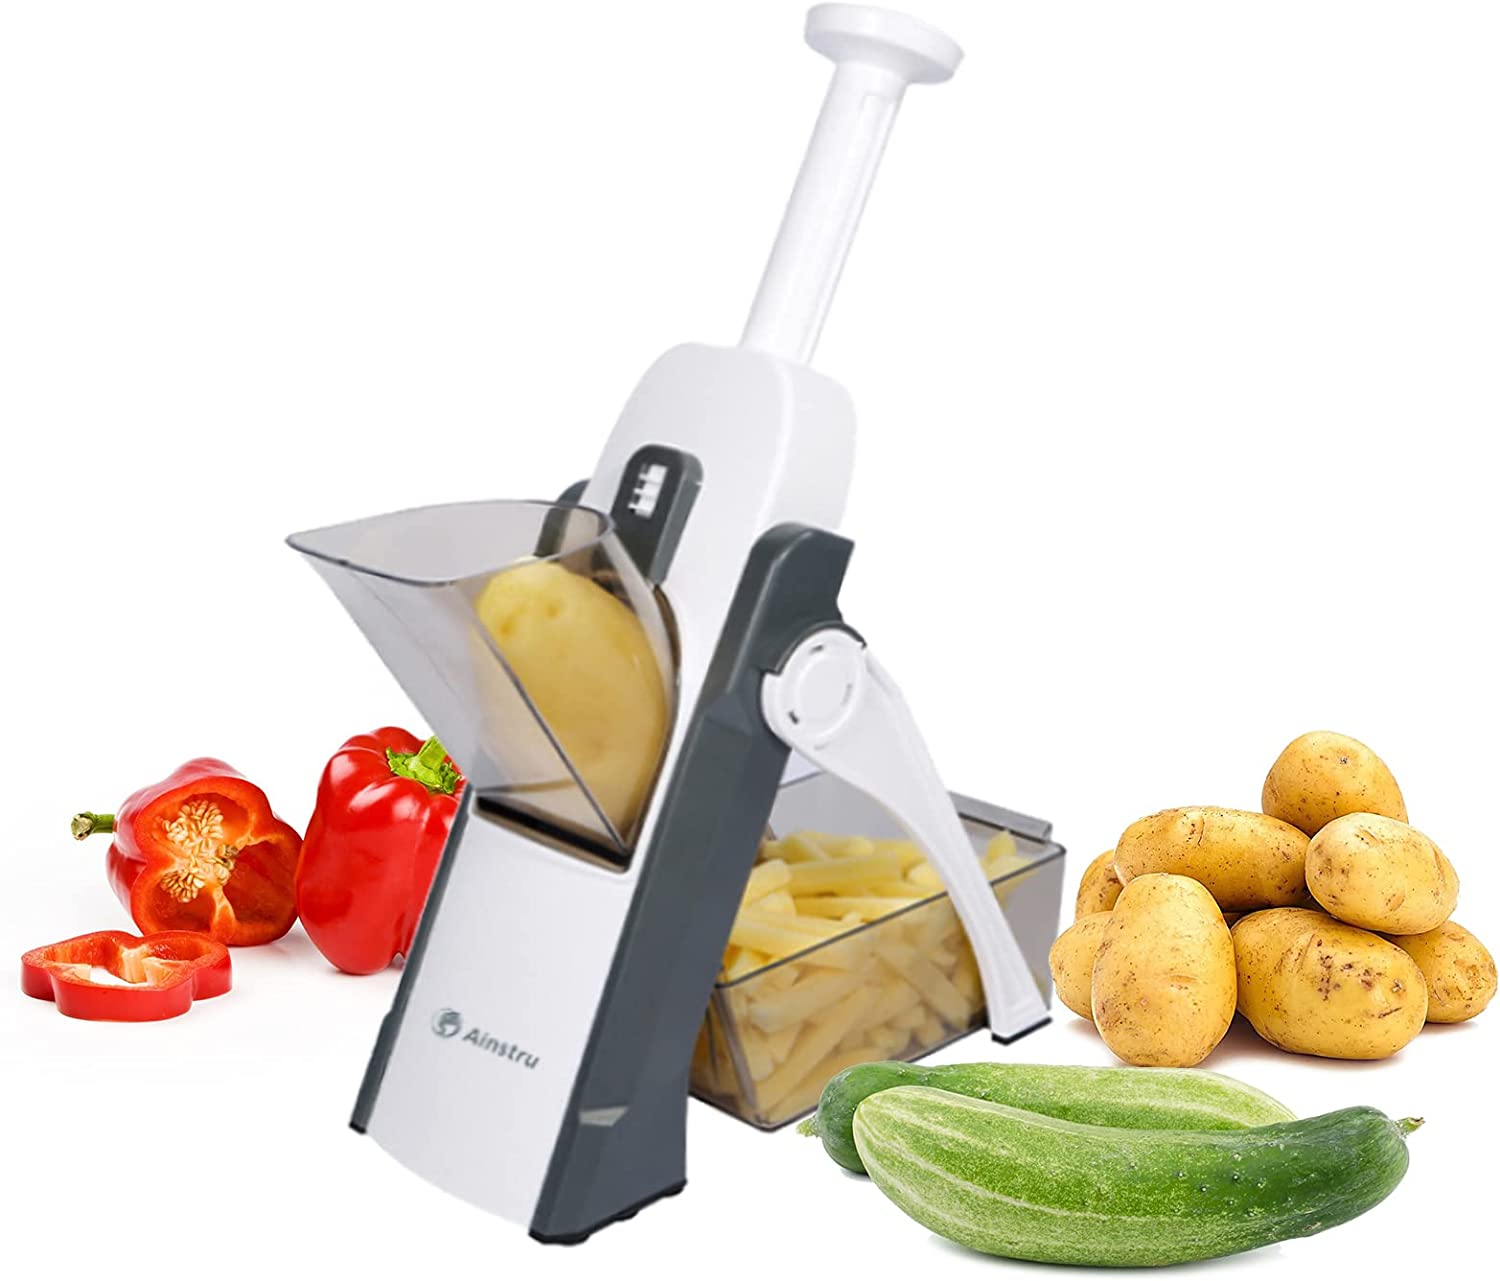 Multi-purpose Vegetable Chopper Slicer Adjustable Vegetable Cutter Safe for Kitchen / 6901234567892